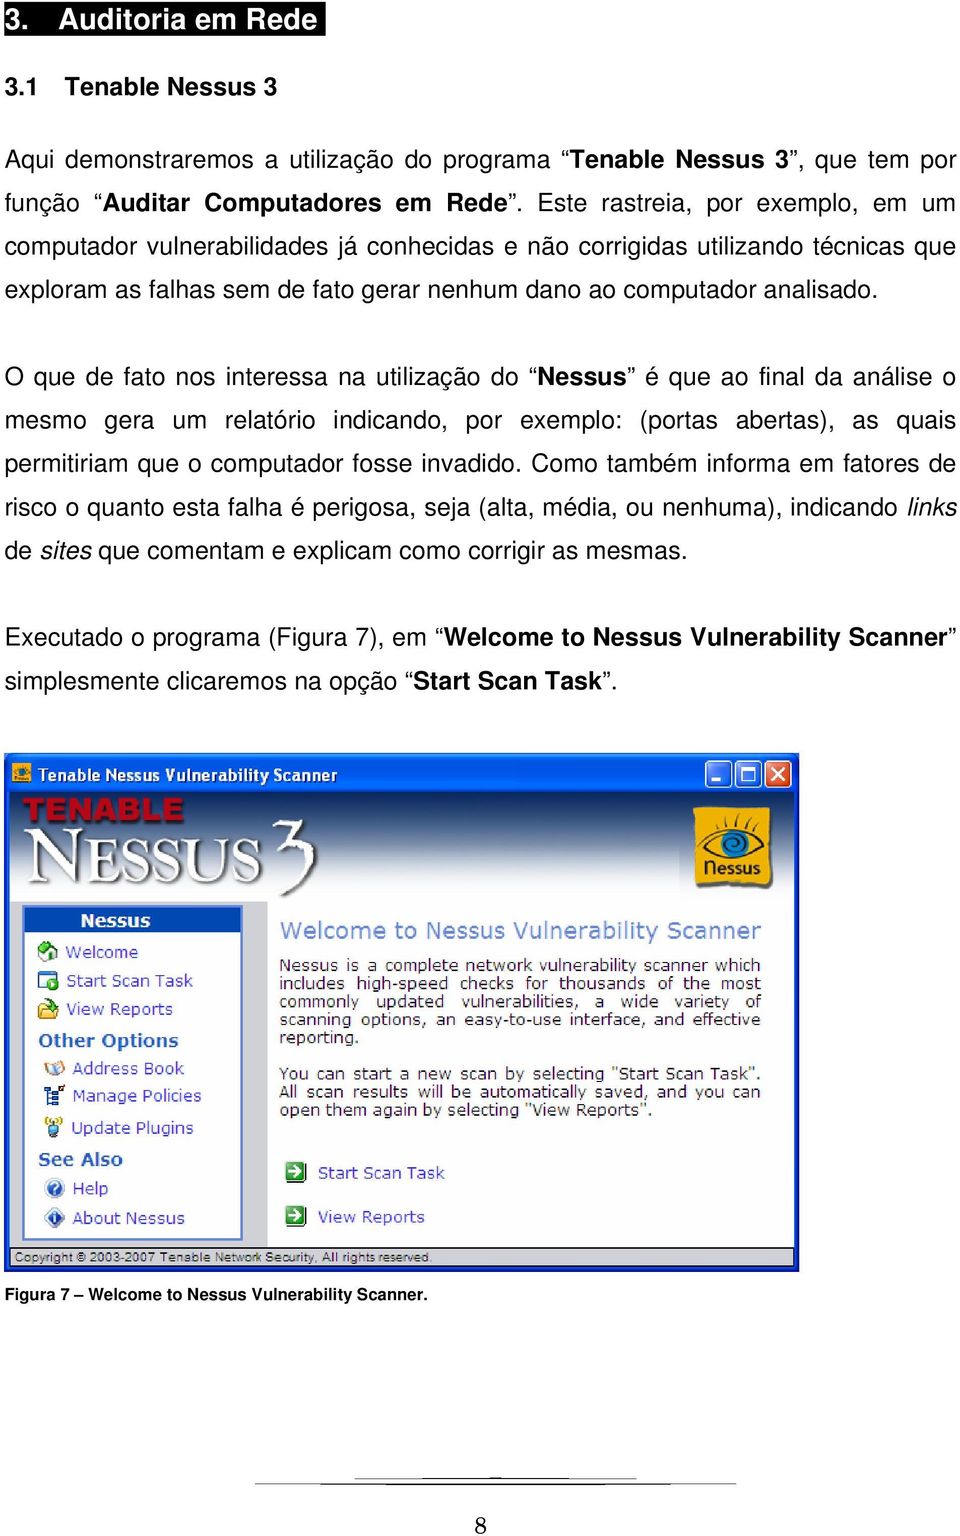 O que de fato nos interessa na utilização do Nessus é que ao final da análise o mesmo gera um relatório indicando, por exemplo: (portas abertas), as quais permitiriam que o computador fosse invadido.